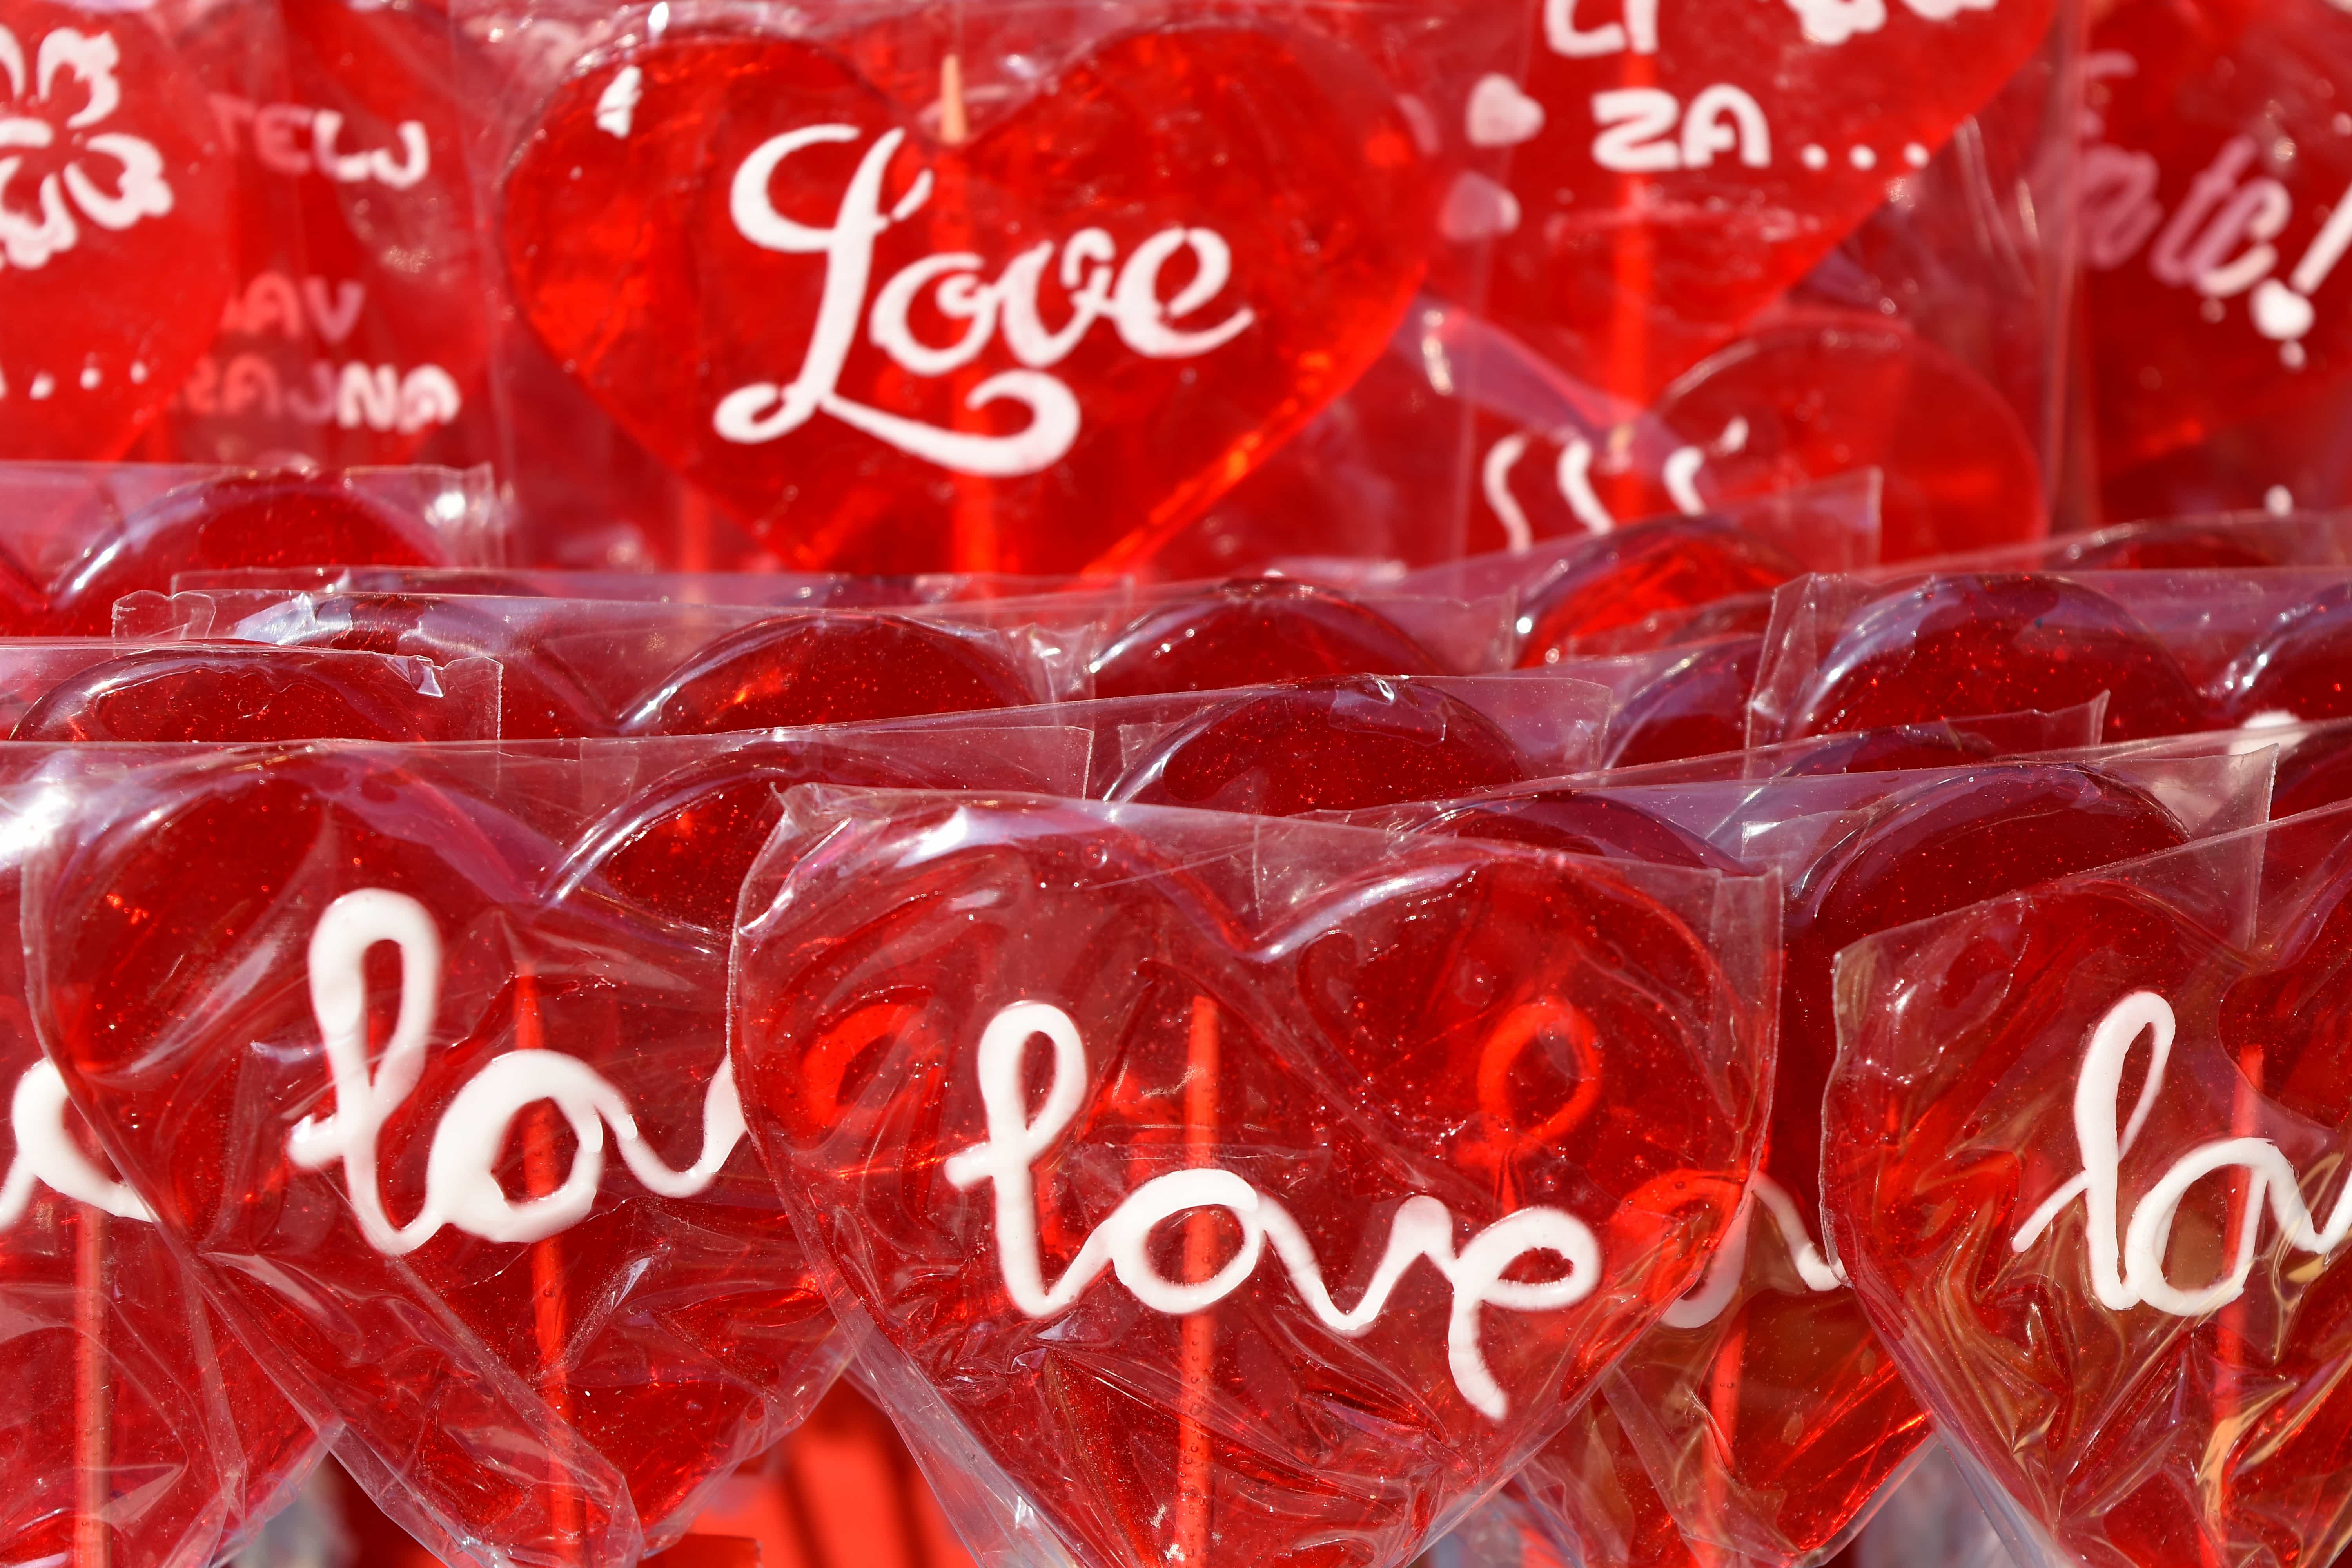 Gratis afbeelding: snoep, gelatine, hart, liefde, rood, tekst, Aftelkalender voor pakket